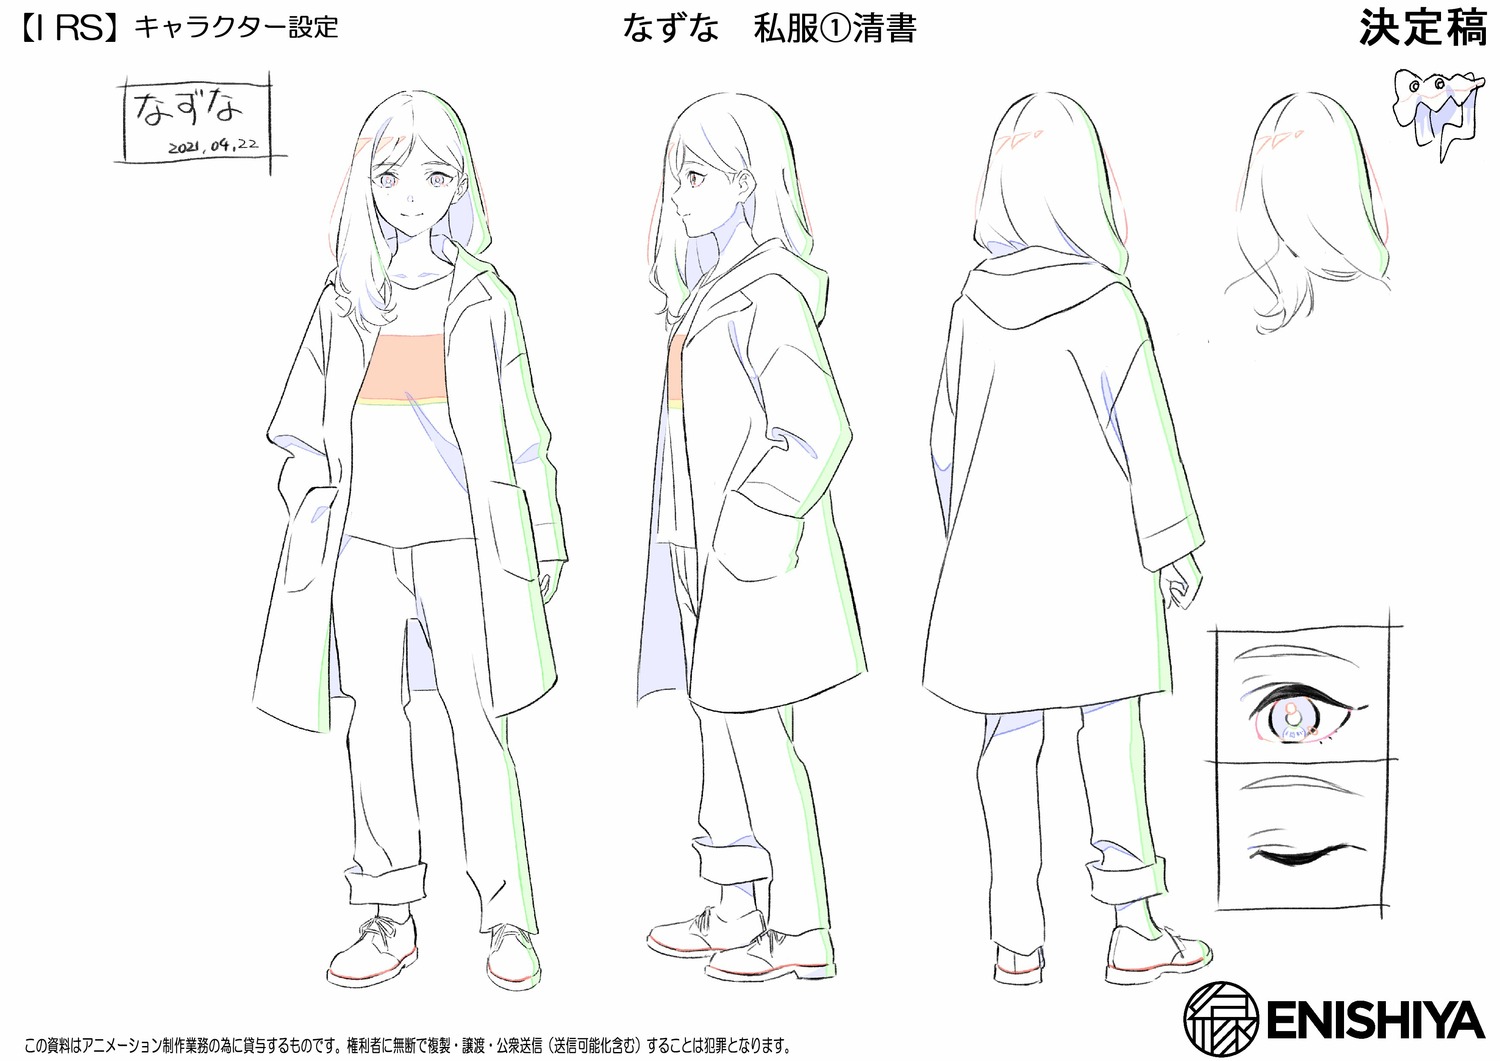 character_design massara mayumi_nakamura production_materials settei